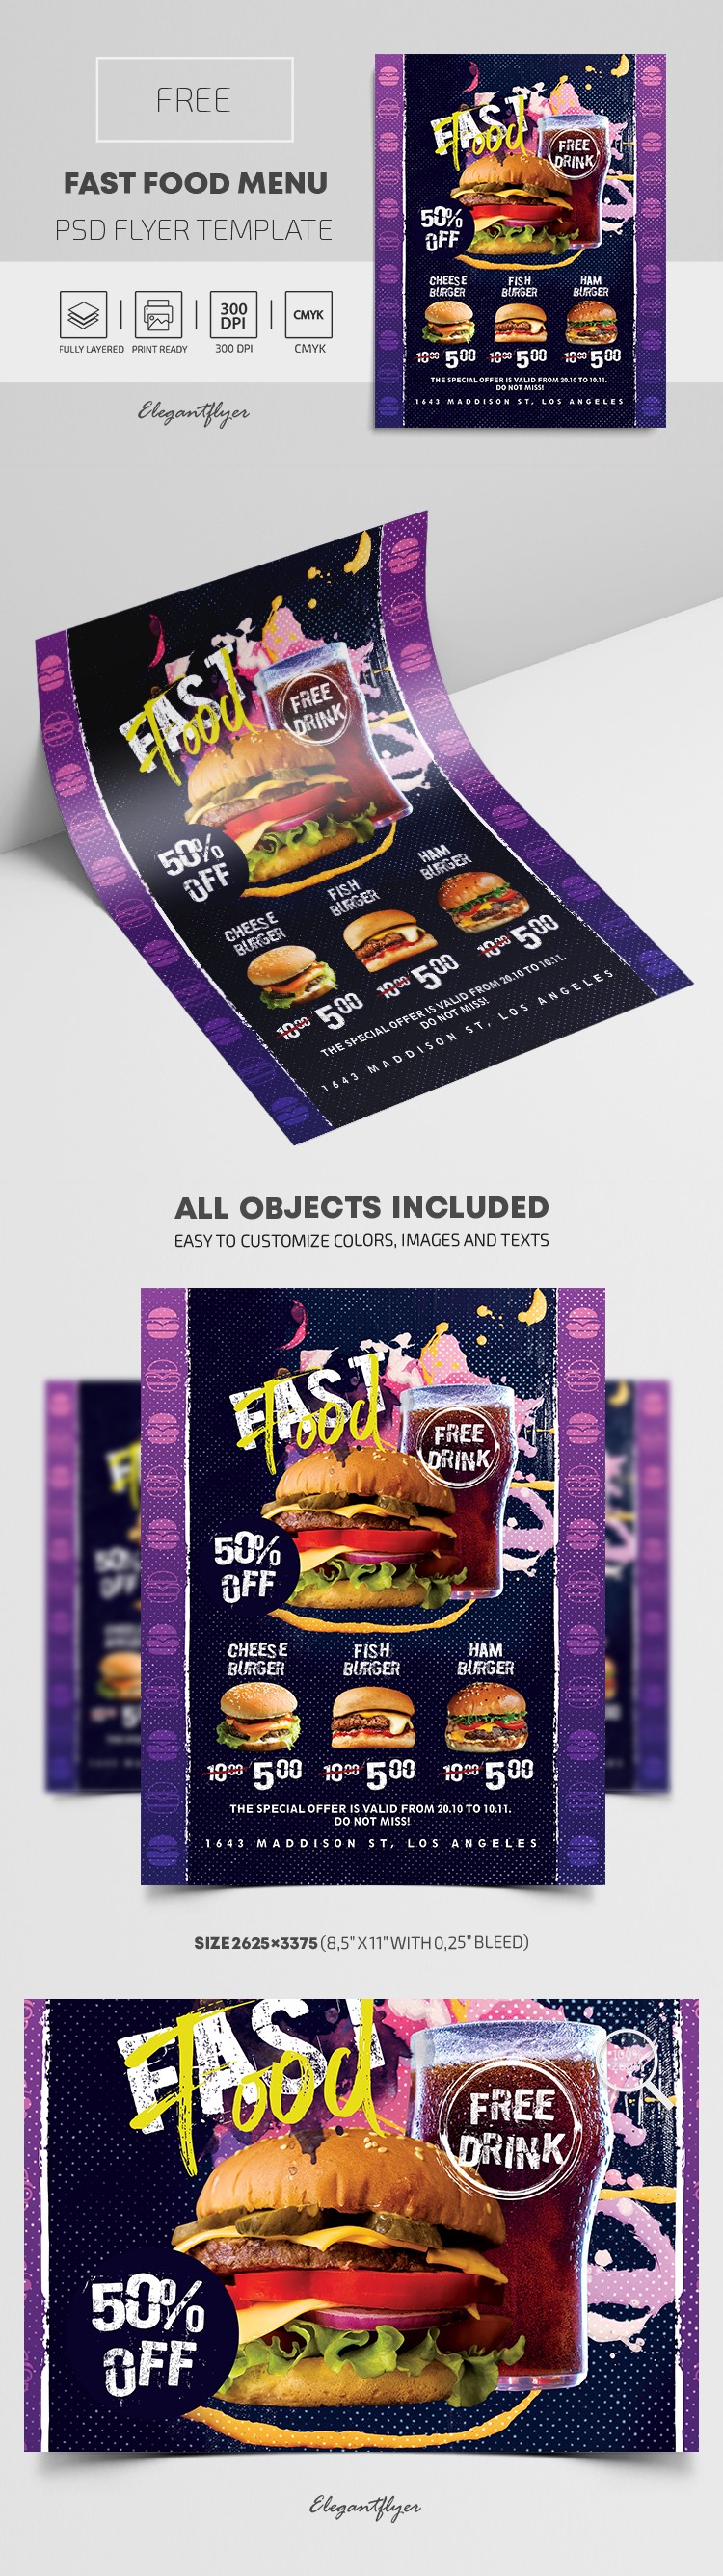 Atractivo folleto de menú de comida rápida. by ElegantFlyer